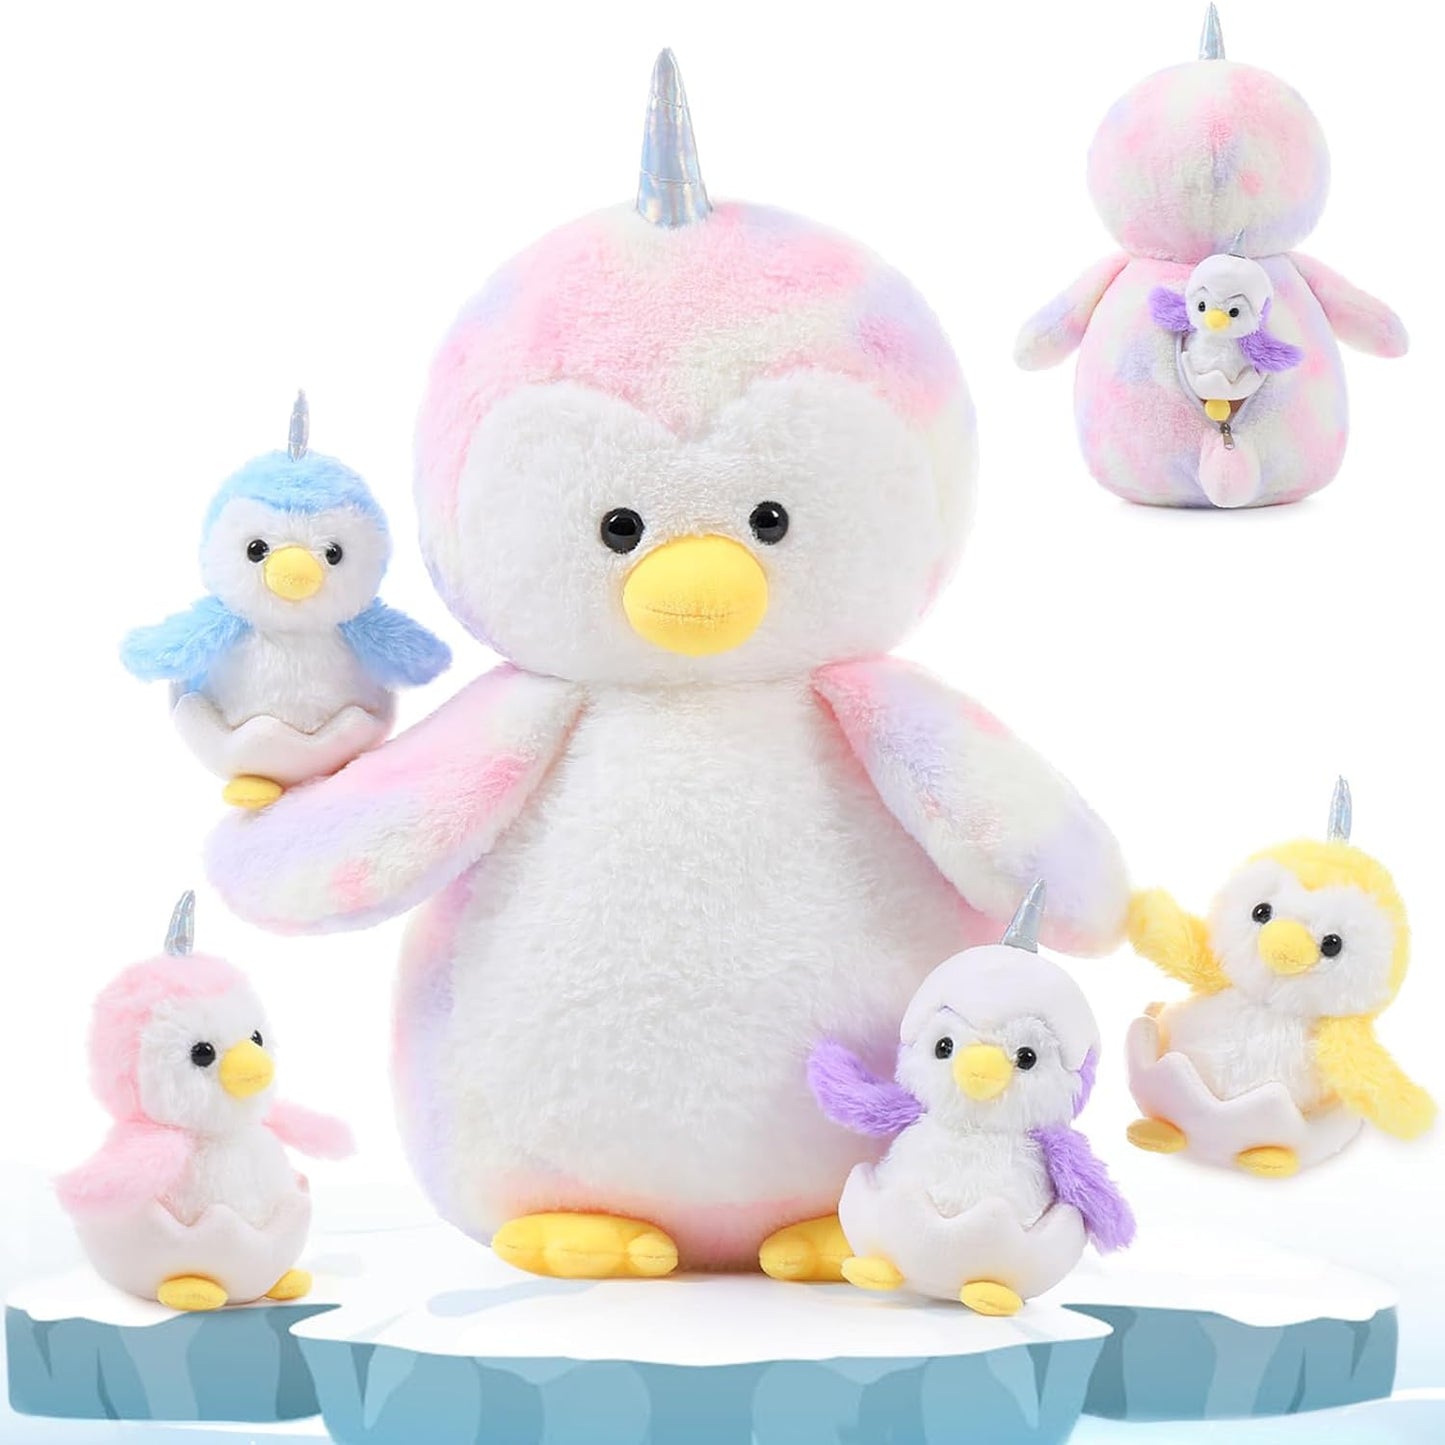 Penguin Plush Toys, 20.5 Inches - MorisMos Stuffed Toys